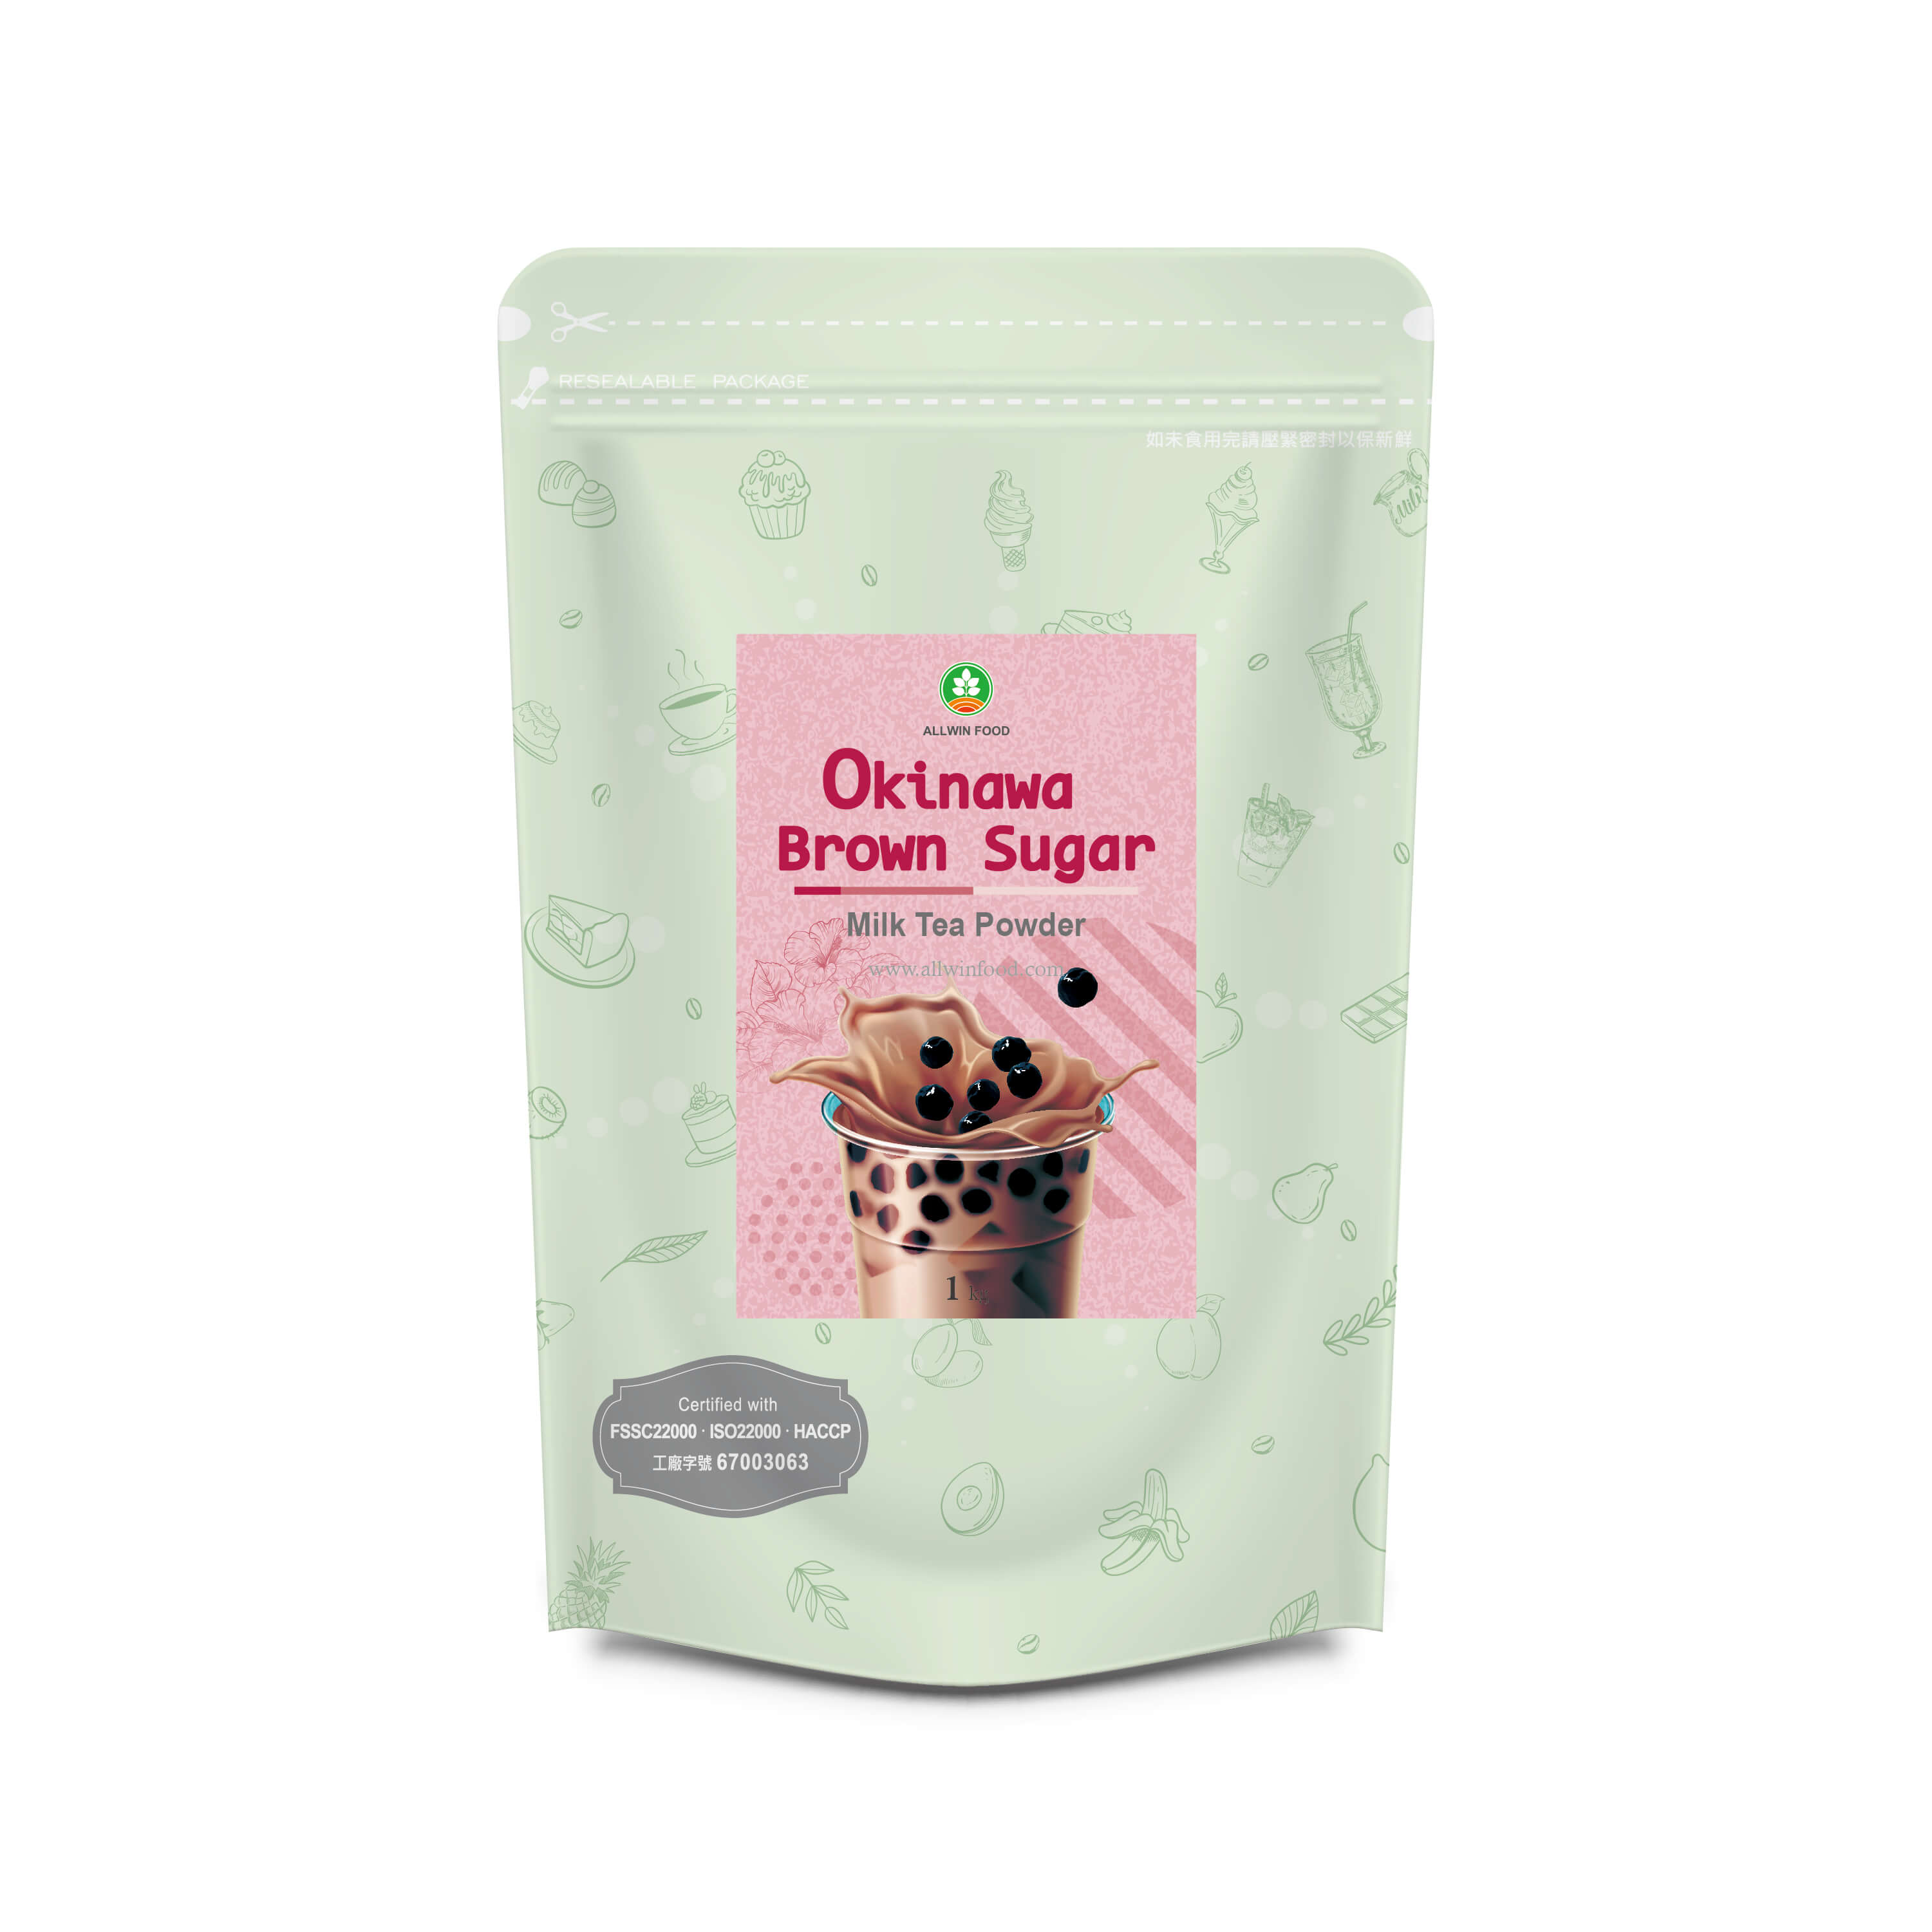 Okinawa Brown Sugar Milk Tea Powder Supplier